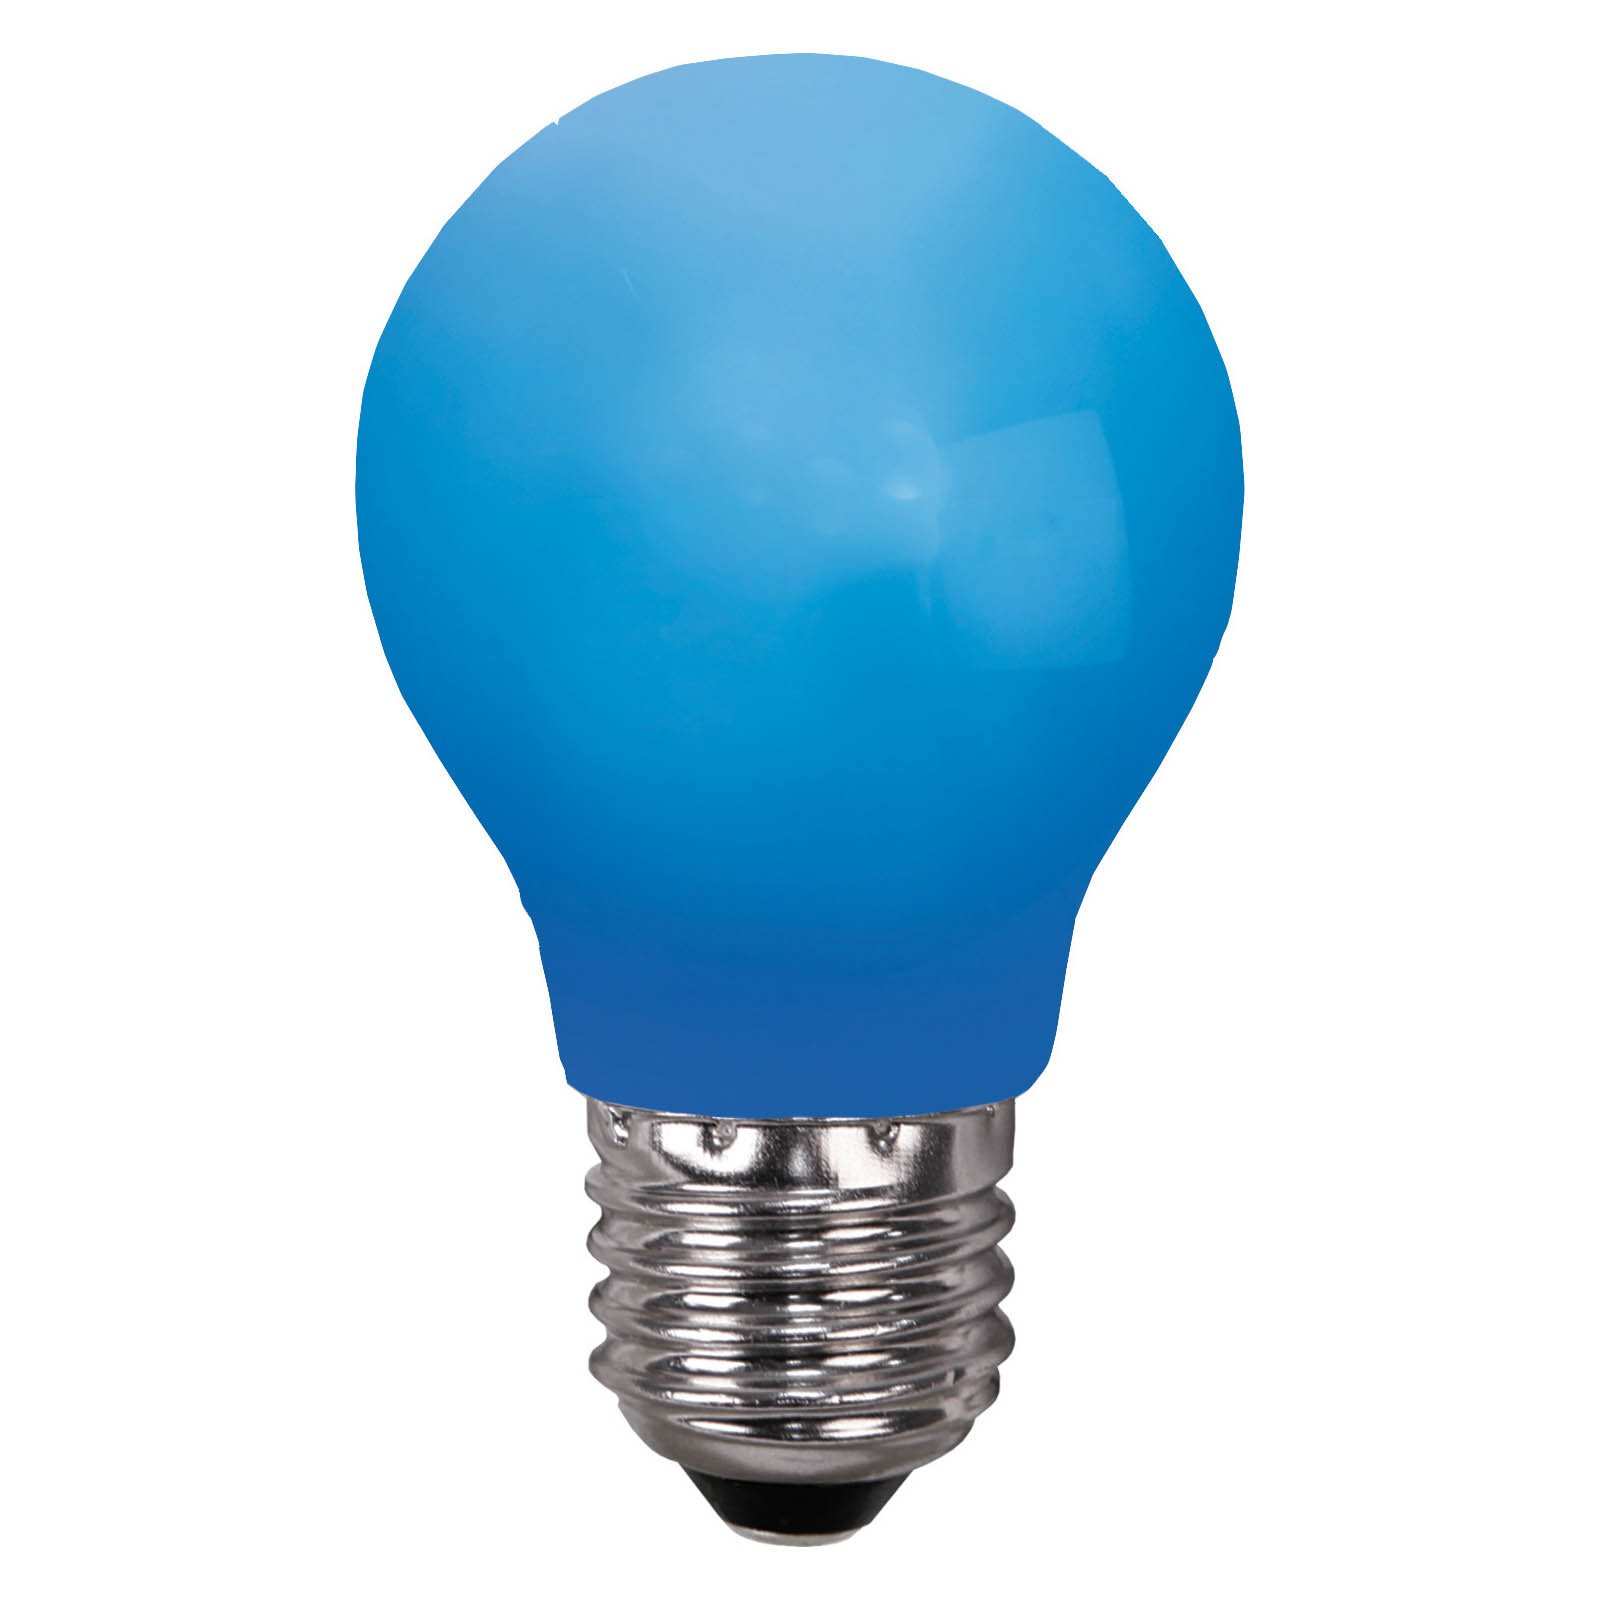 LED-lampe E27 til lyskæder, brudsikker, blå